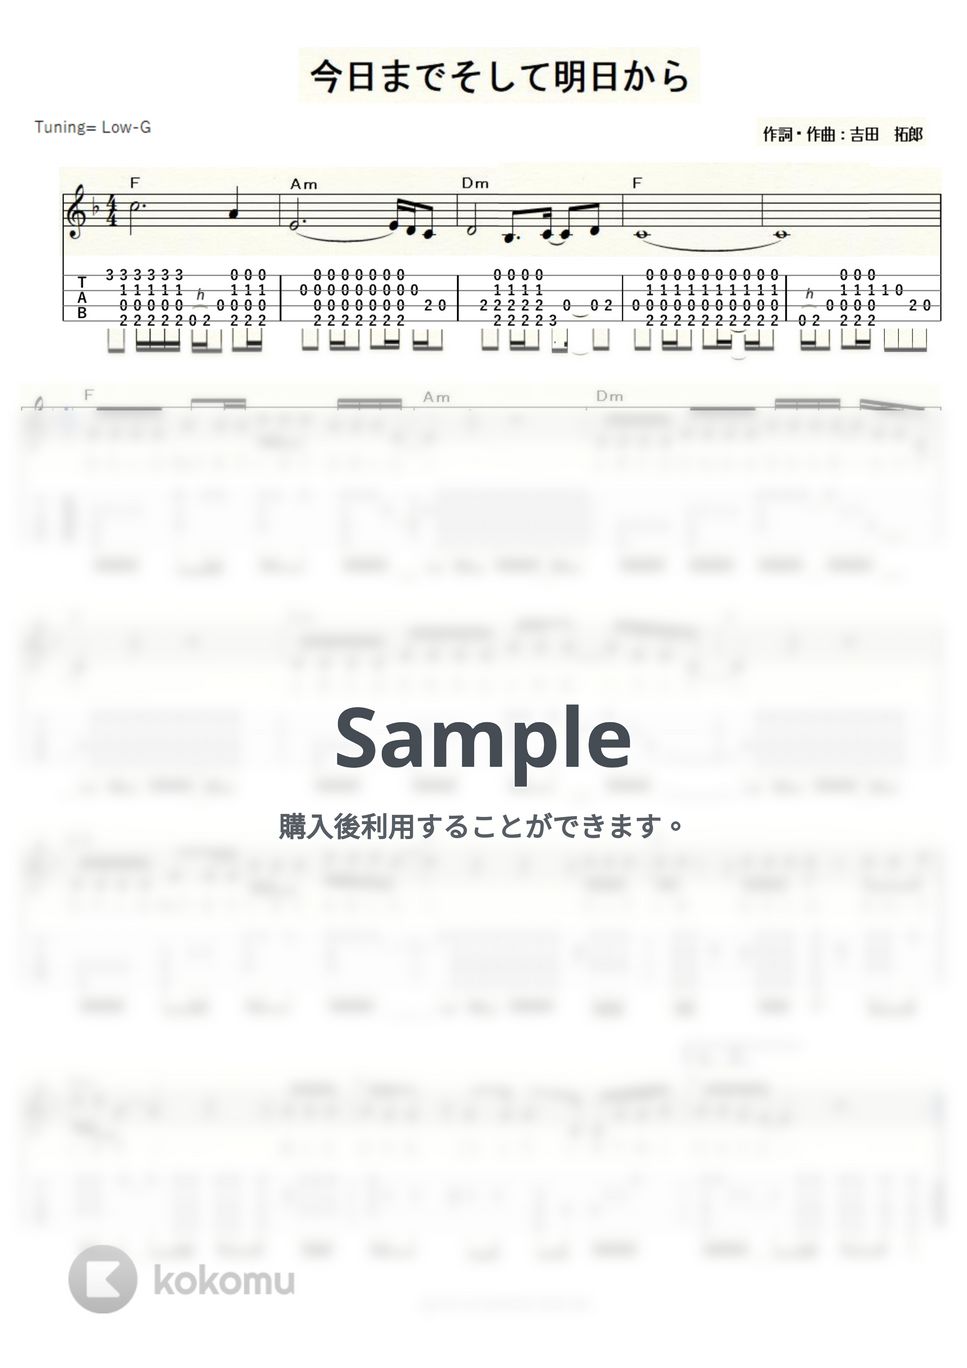 吉田拓郎 - 今日までそして明日から (ｳｸﾚﾚｿﾛ/Low-G/中級) by ukulelepapa